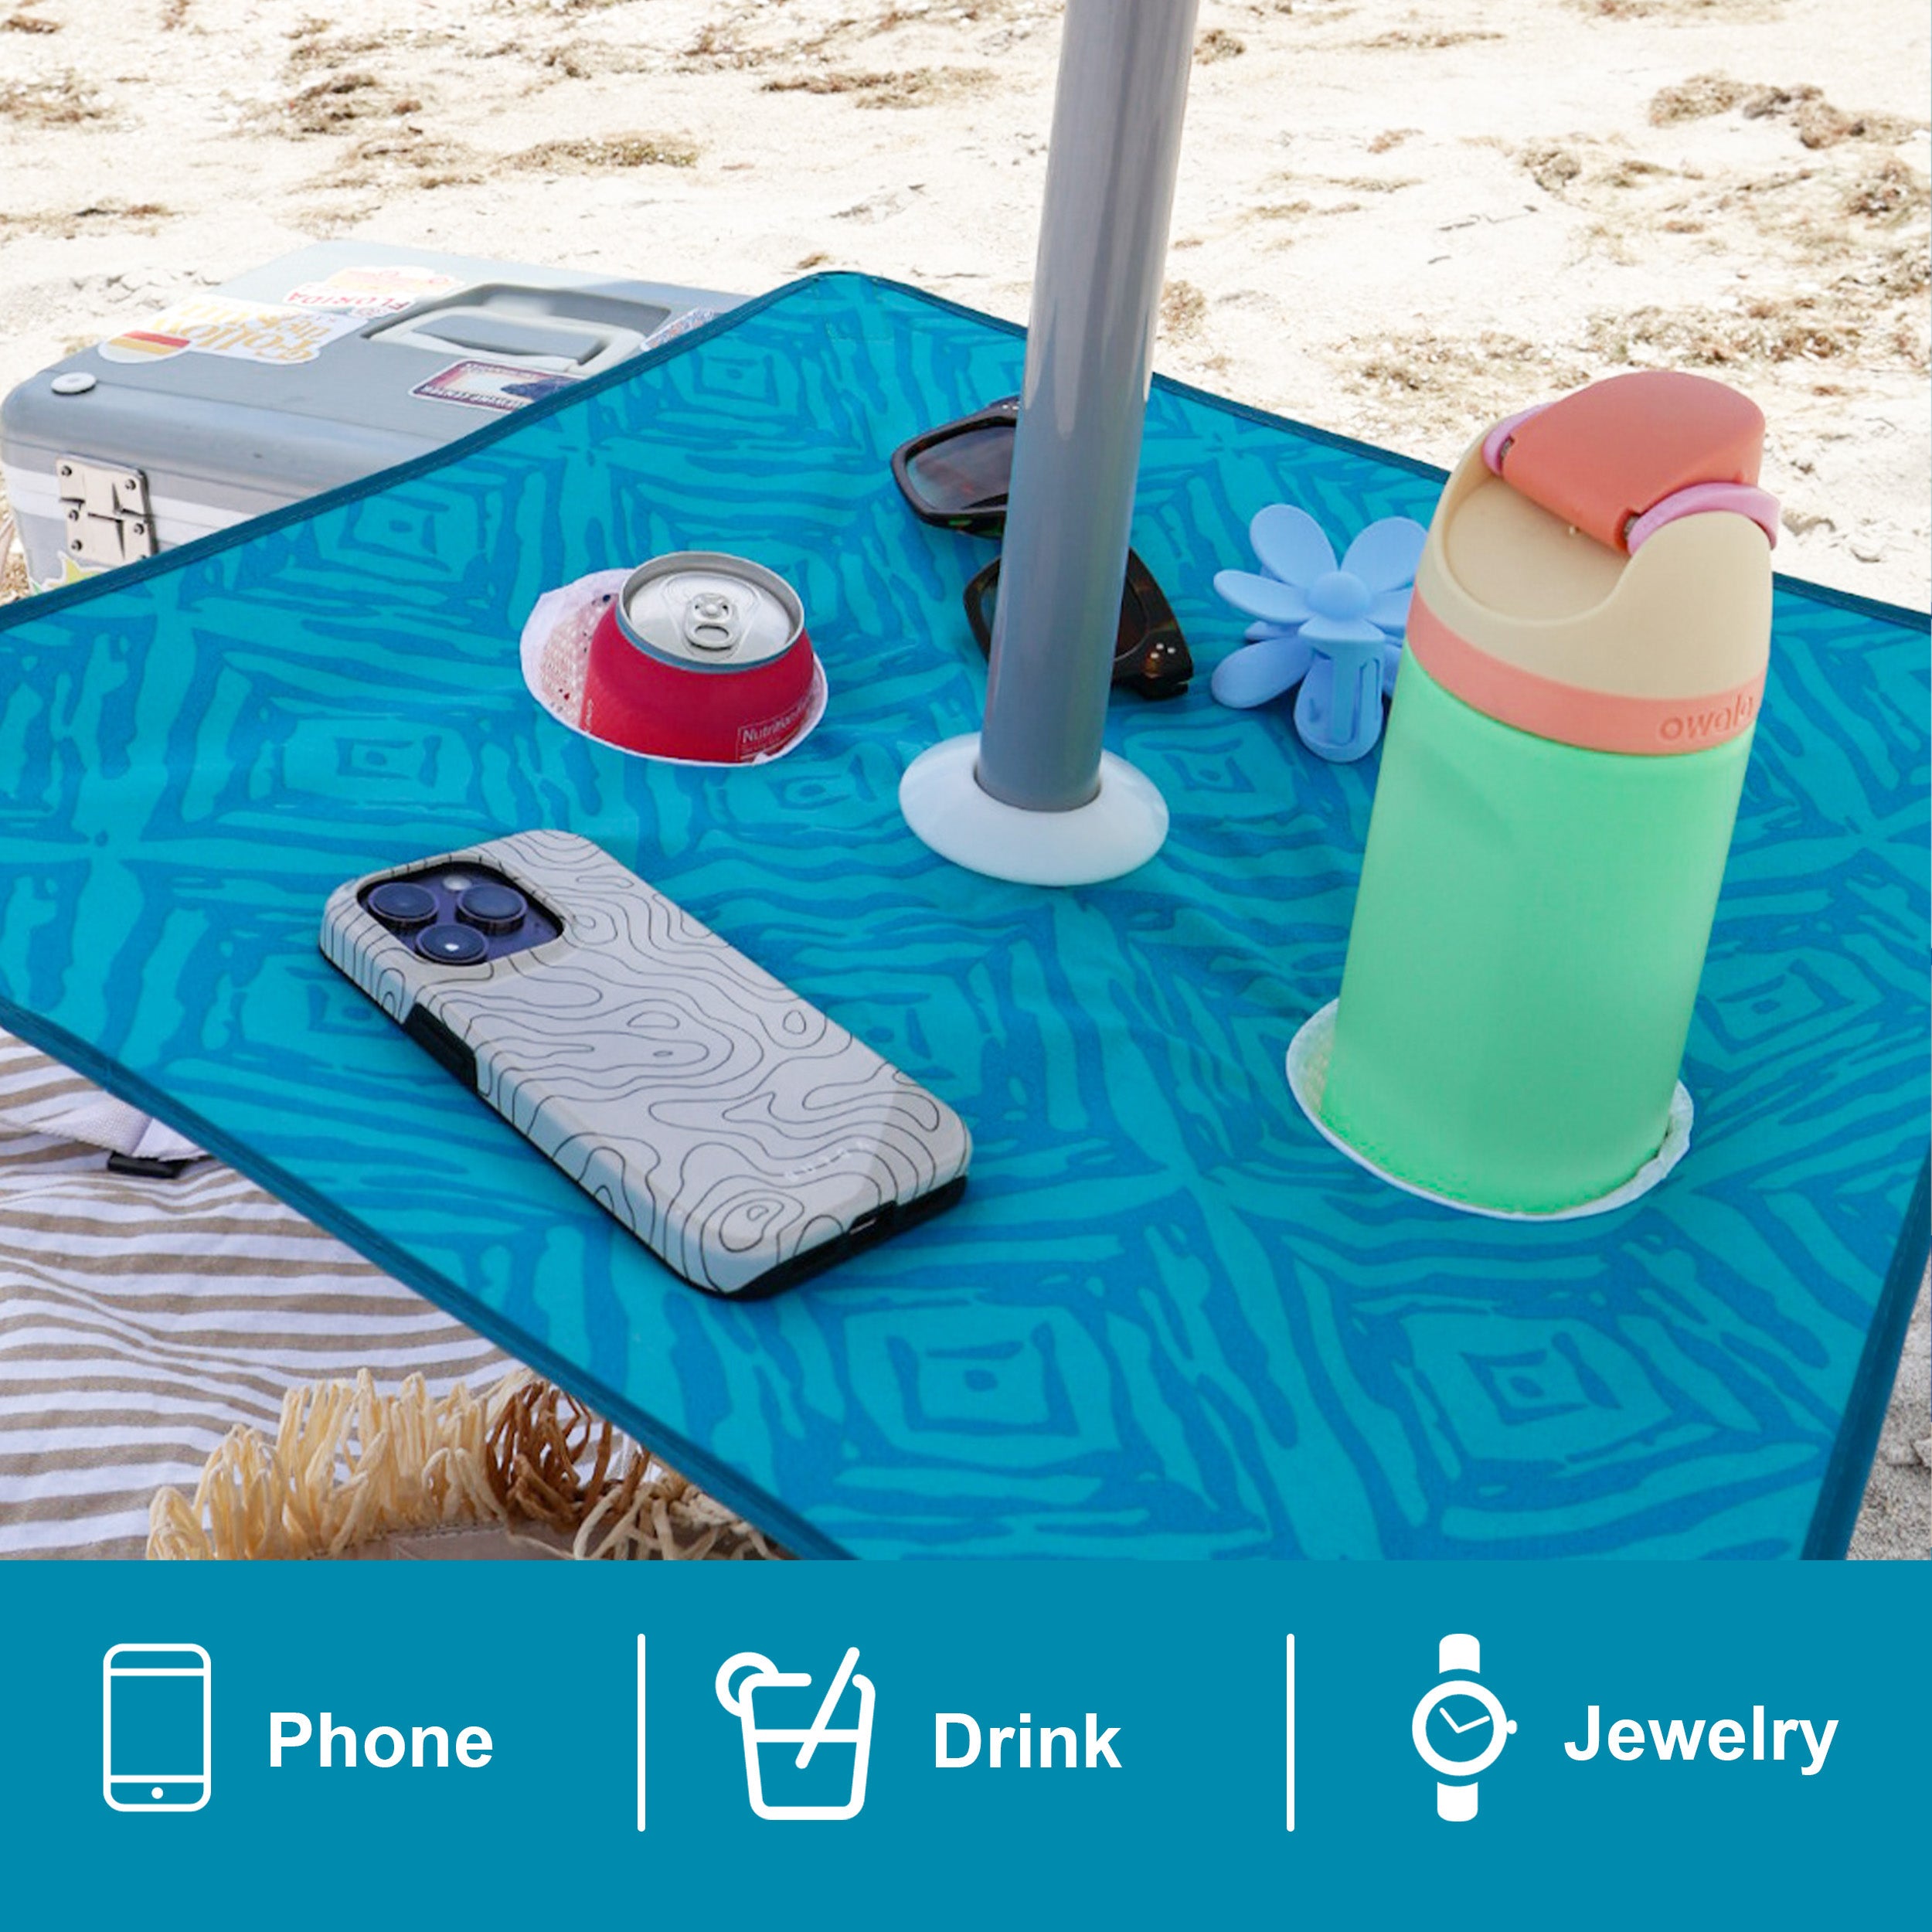 AMMSUN Beach Umbrella with Sand Anchor & Table Tray Sky Blue Paint